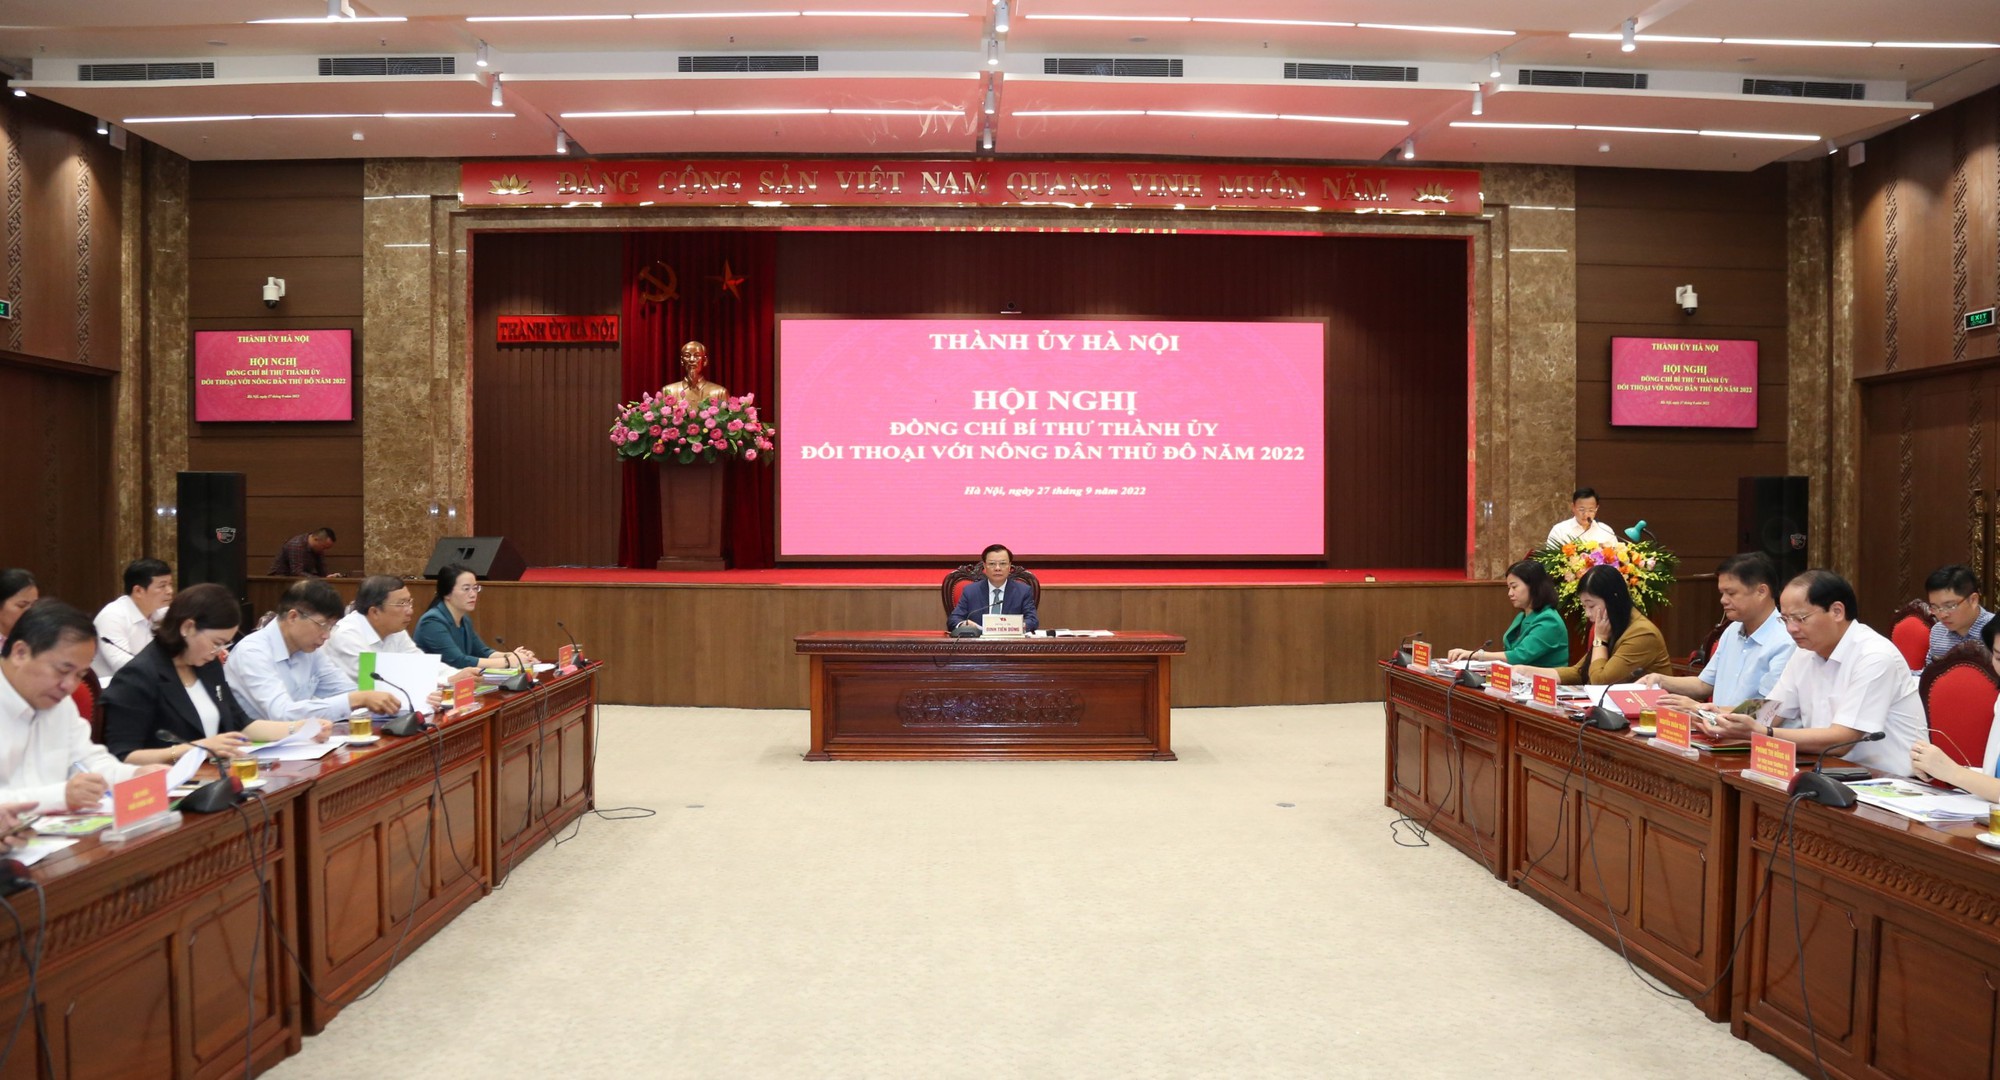 Bí thư Thành uỷ Hà Nội Đinh Tiến Dũng đối thoại 6 nhóm vấn đề nóng với nông dân Thủ đô - Ảnh 2.